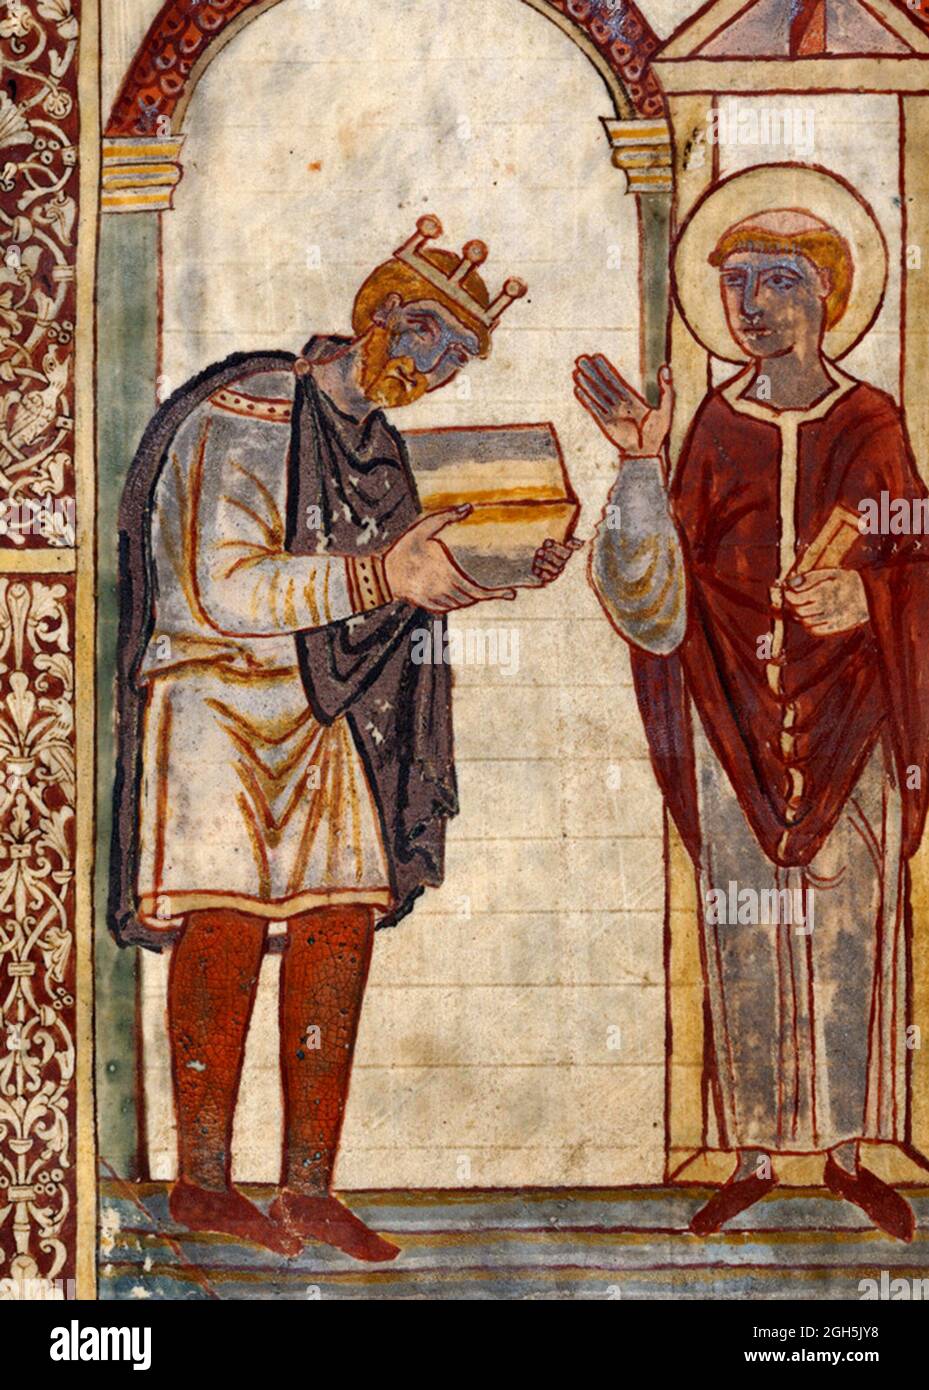 Retrato de Ateneo, rey de Inglaterra desde 924 hasta 939, presentando una copia del libro 'La vida de San Cuthbert' de Beda al mismo St Cuthbert. Foto de stock